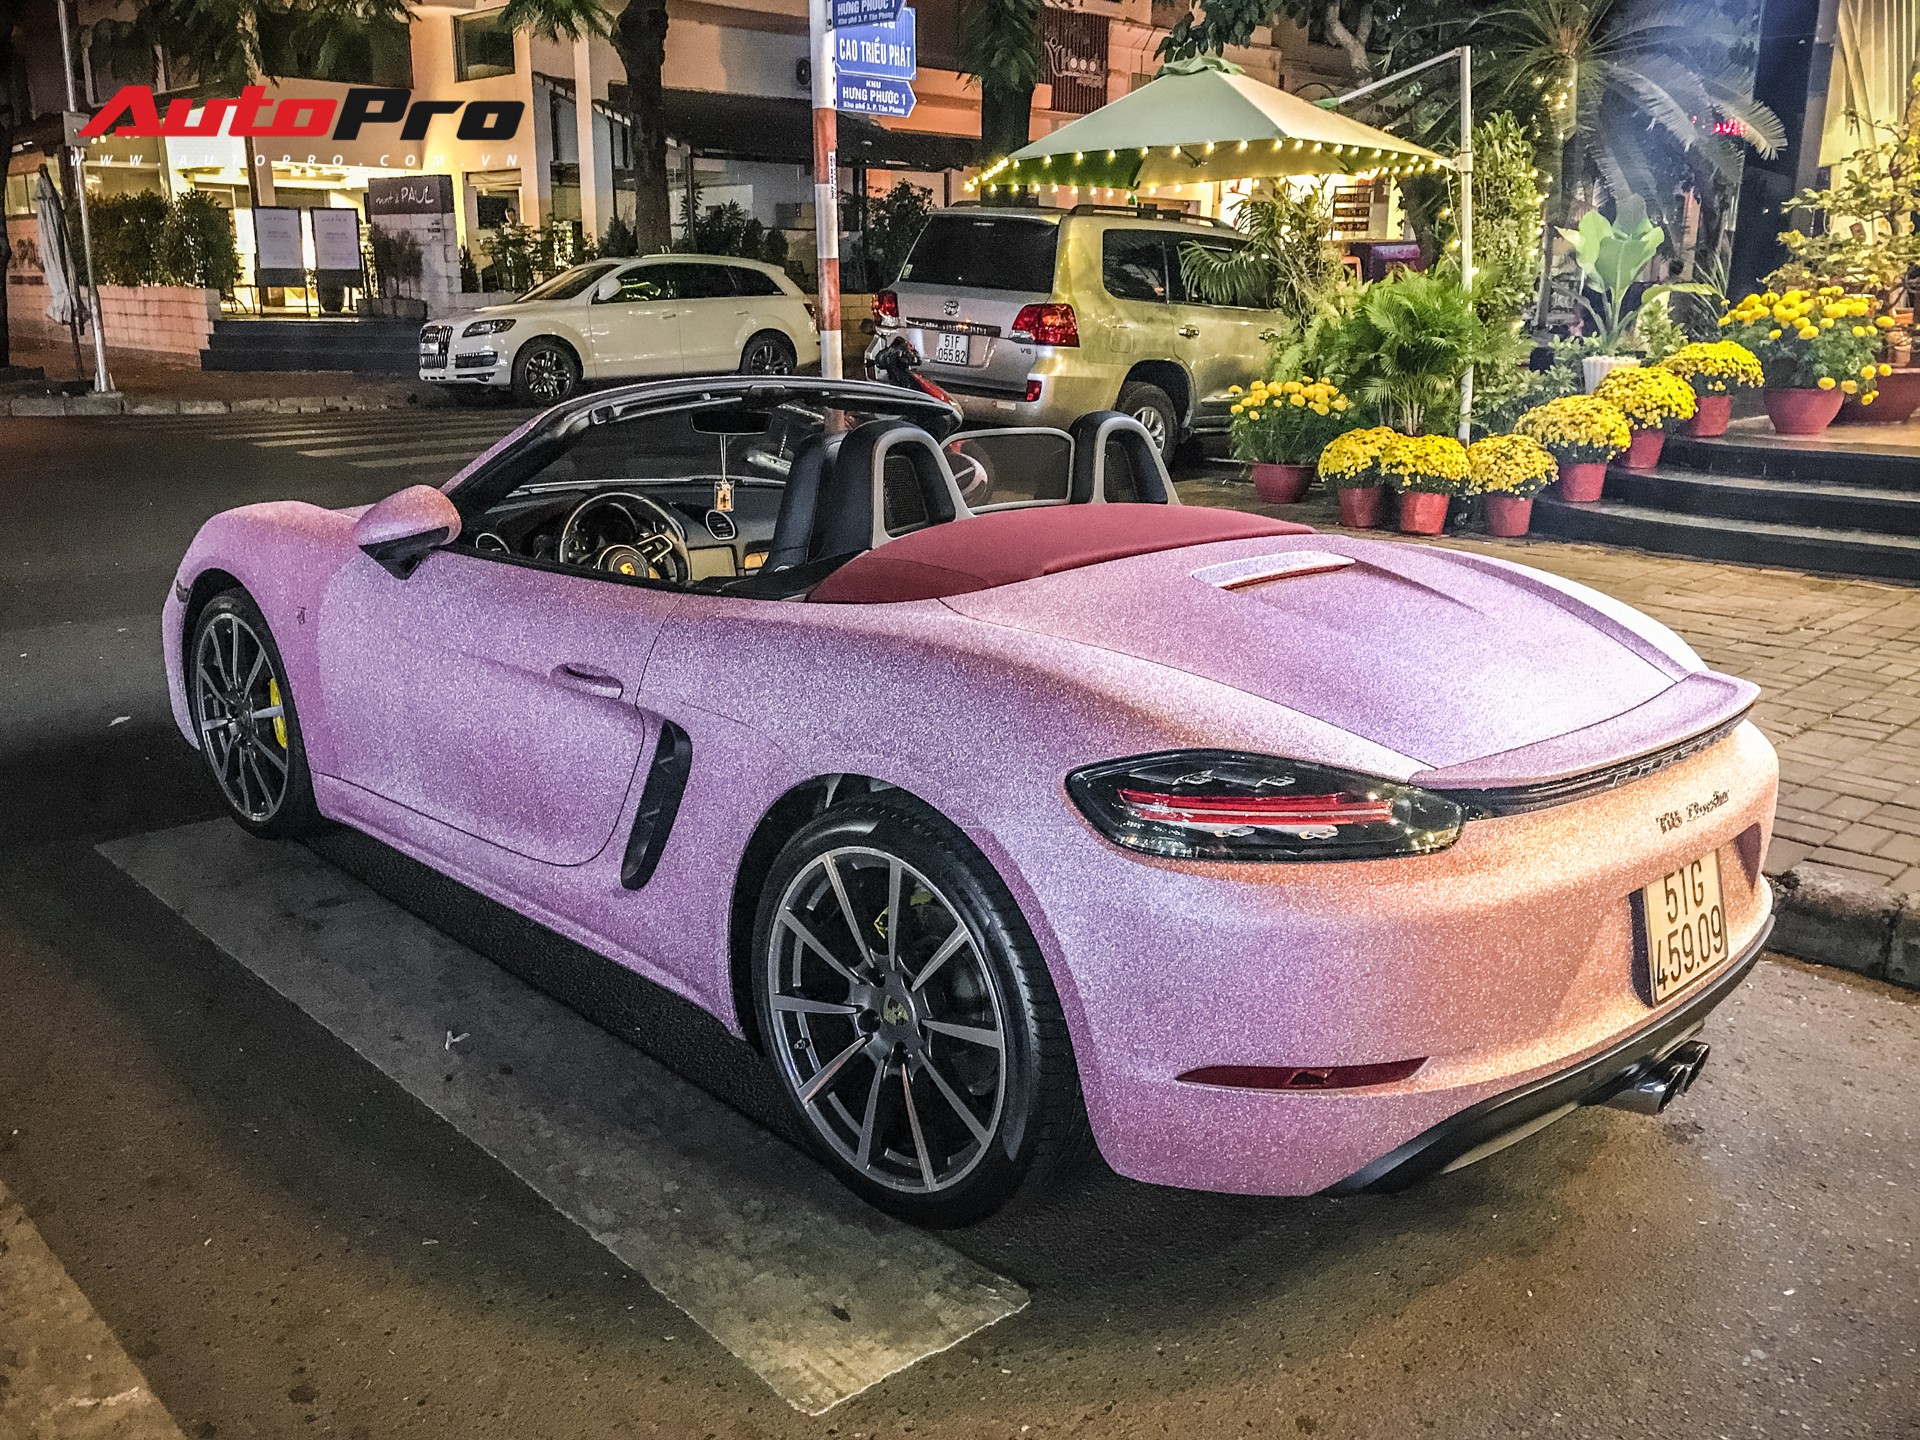 Xe hơi độc đáo: Bộ cánh hồng trên chiếc Porsche Boxster - Chiếc Porsche Boxster với bộ cánh hồng độc đáo chắc chắn sẽ khiến bạn không thể rời mắt khỏi nó. Với phong cách thẩm mỹ vô cùng nổi bật và chất lượng vượt trội, chiếc xe này sẽ là sự lựa chọn hoàn hảo cho những ai yêu thích sự độc đáo và ấn tượng. Hãy cùng chiêm ngưỡng chiếc xe này trên hình ảnh để hiểu rõ hơn về vẻ đẹp đầy tinh tế của nó.